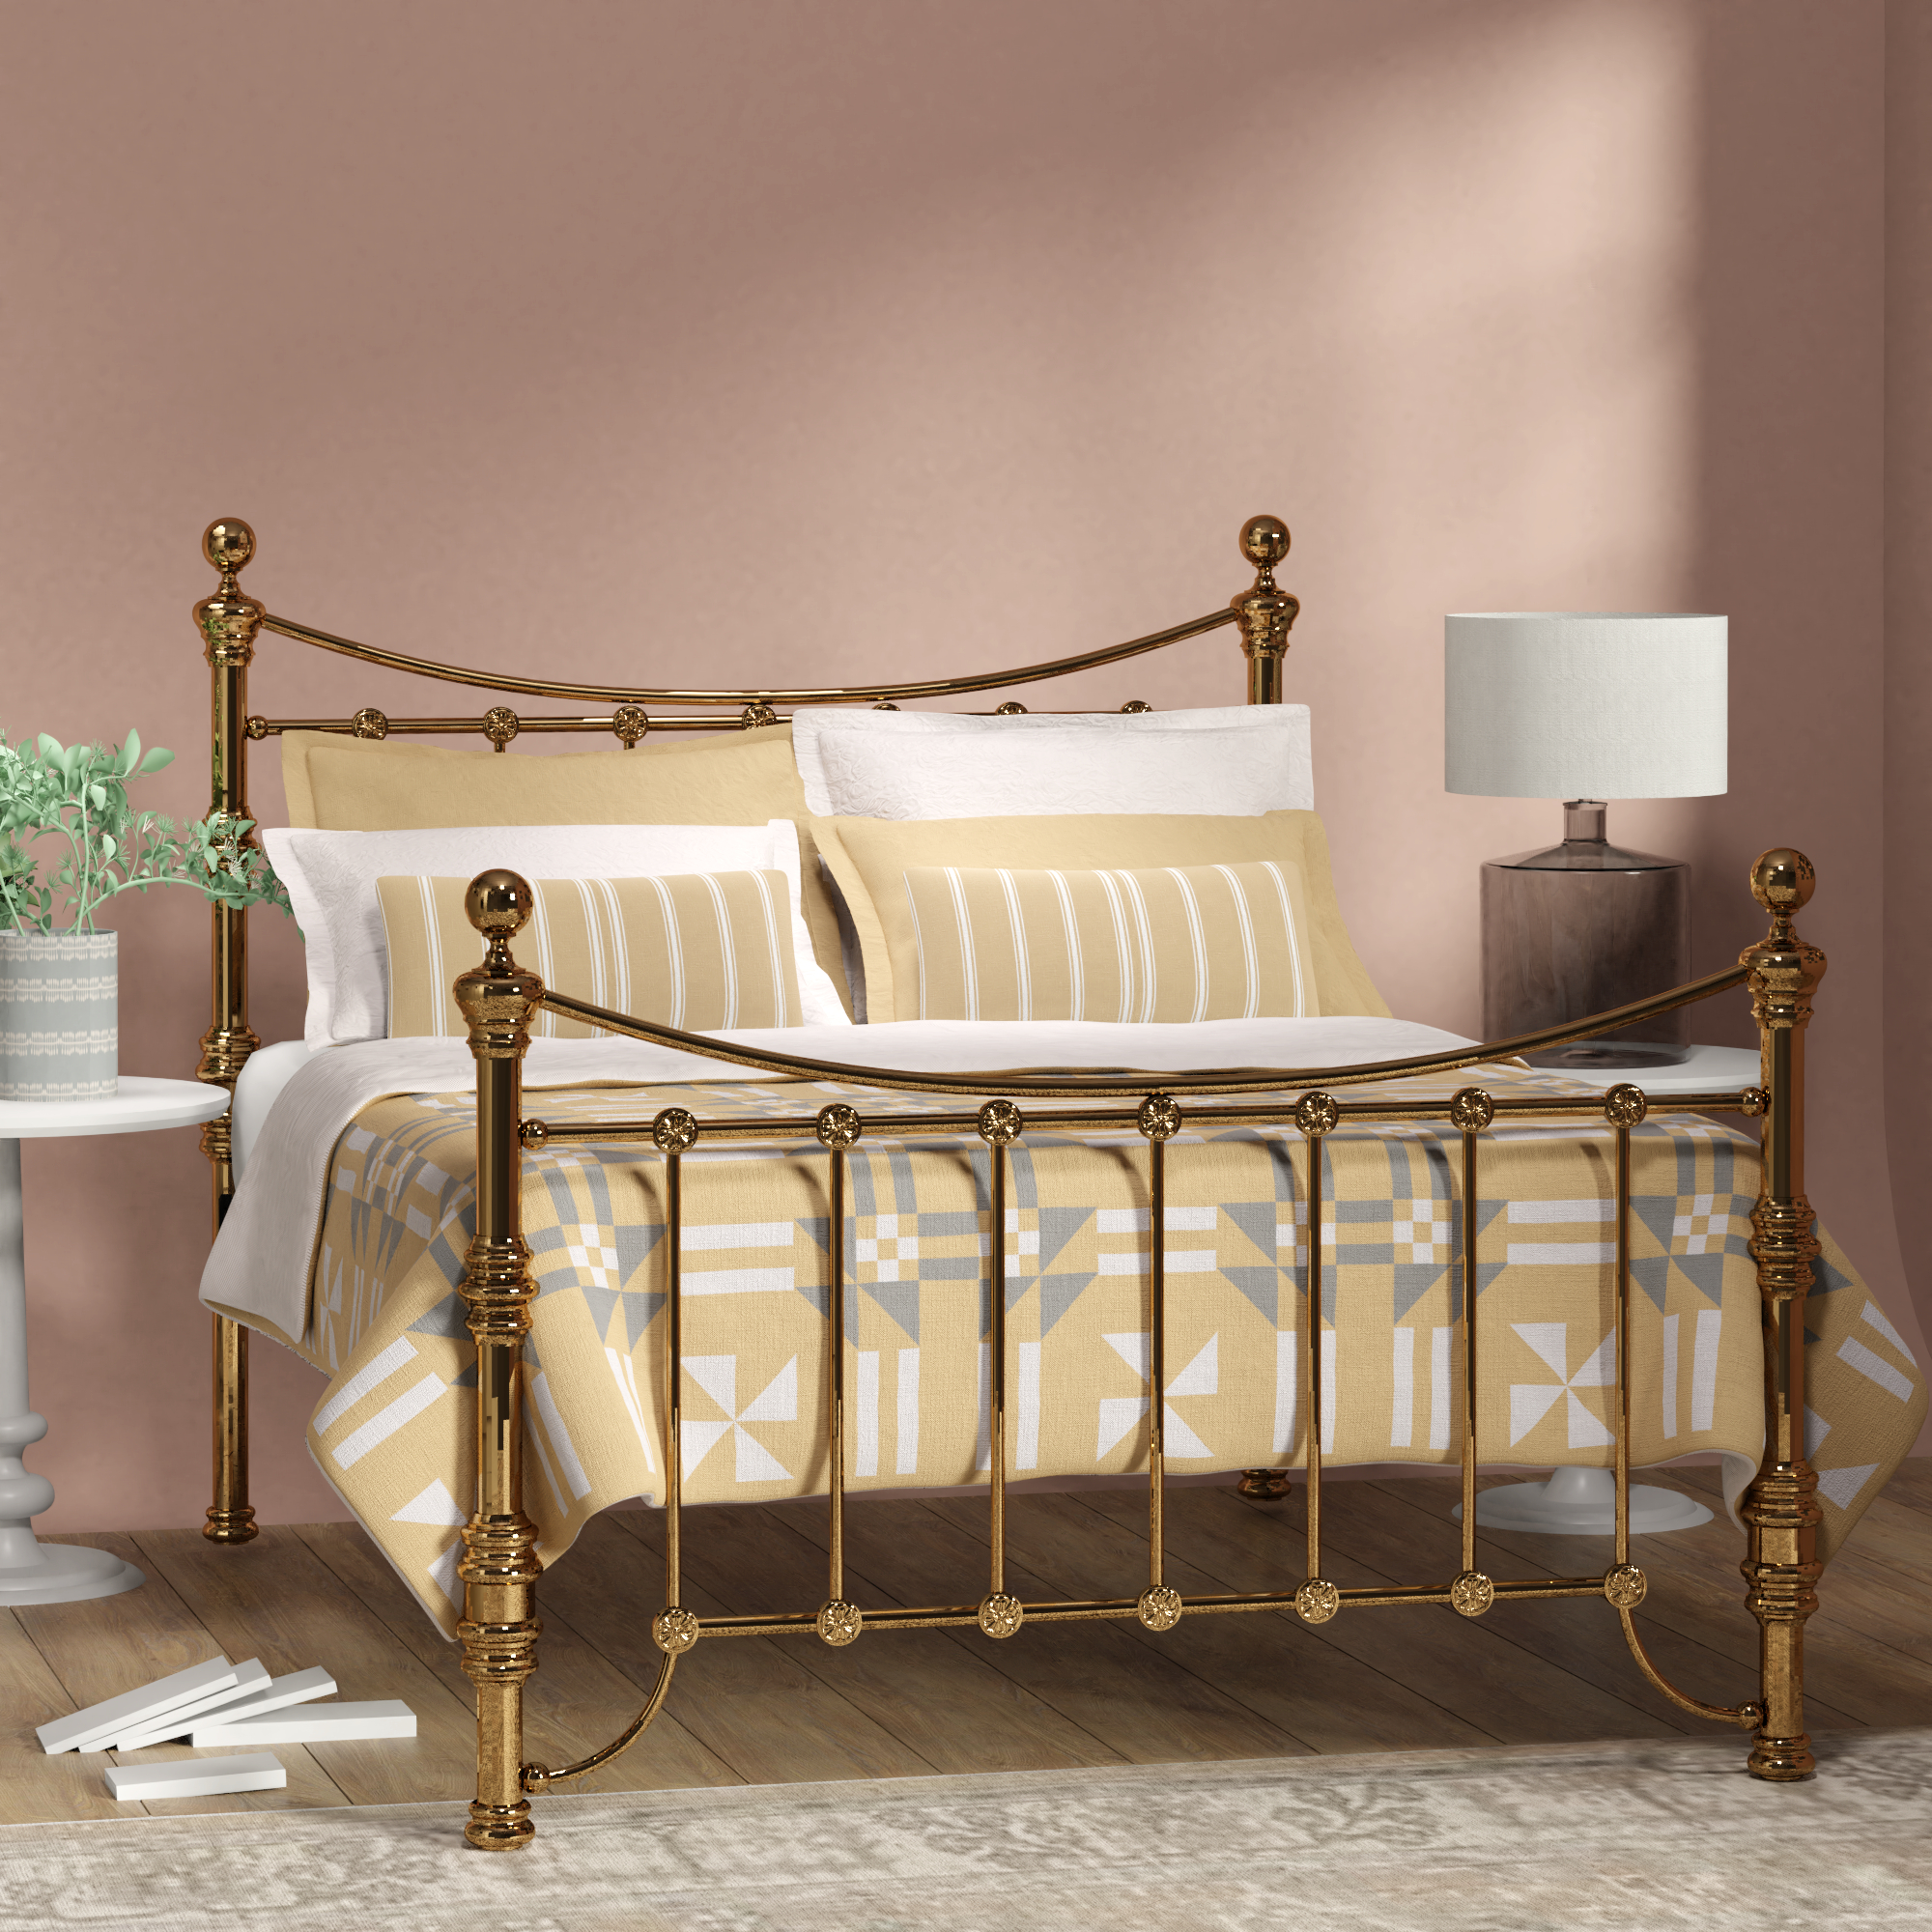 Arran brass bed - Image 4 (Pink bedroom)